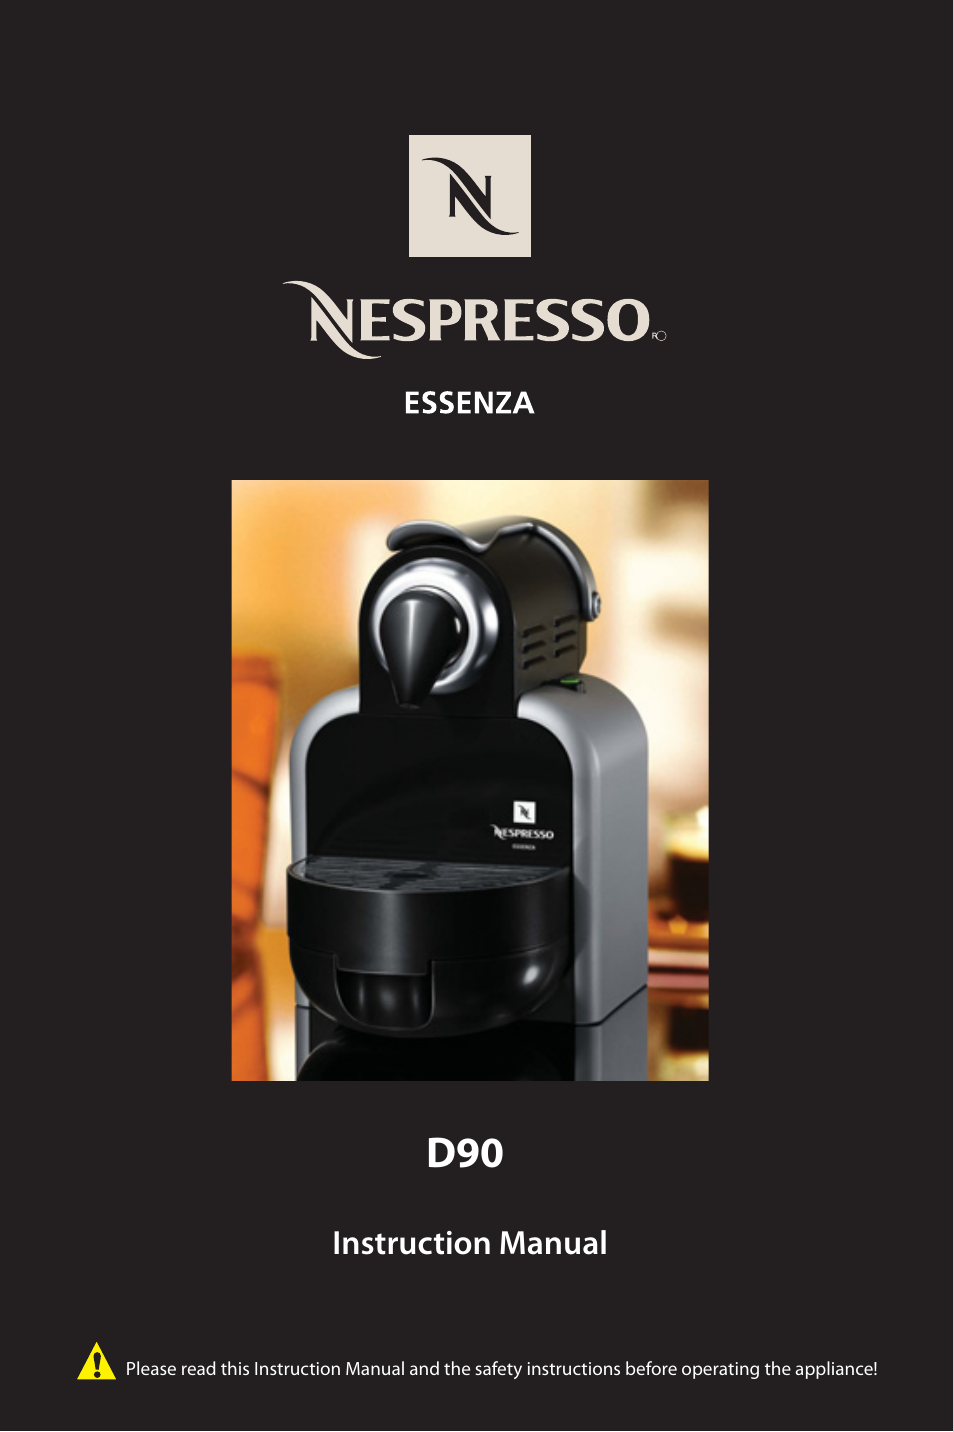 harpun Vis stedet forsendelse Nespresso Essenza D90 User Manual | 7 pages